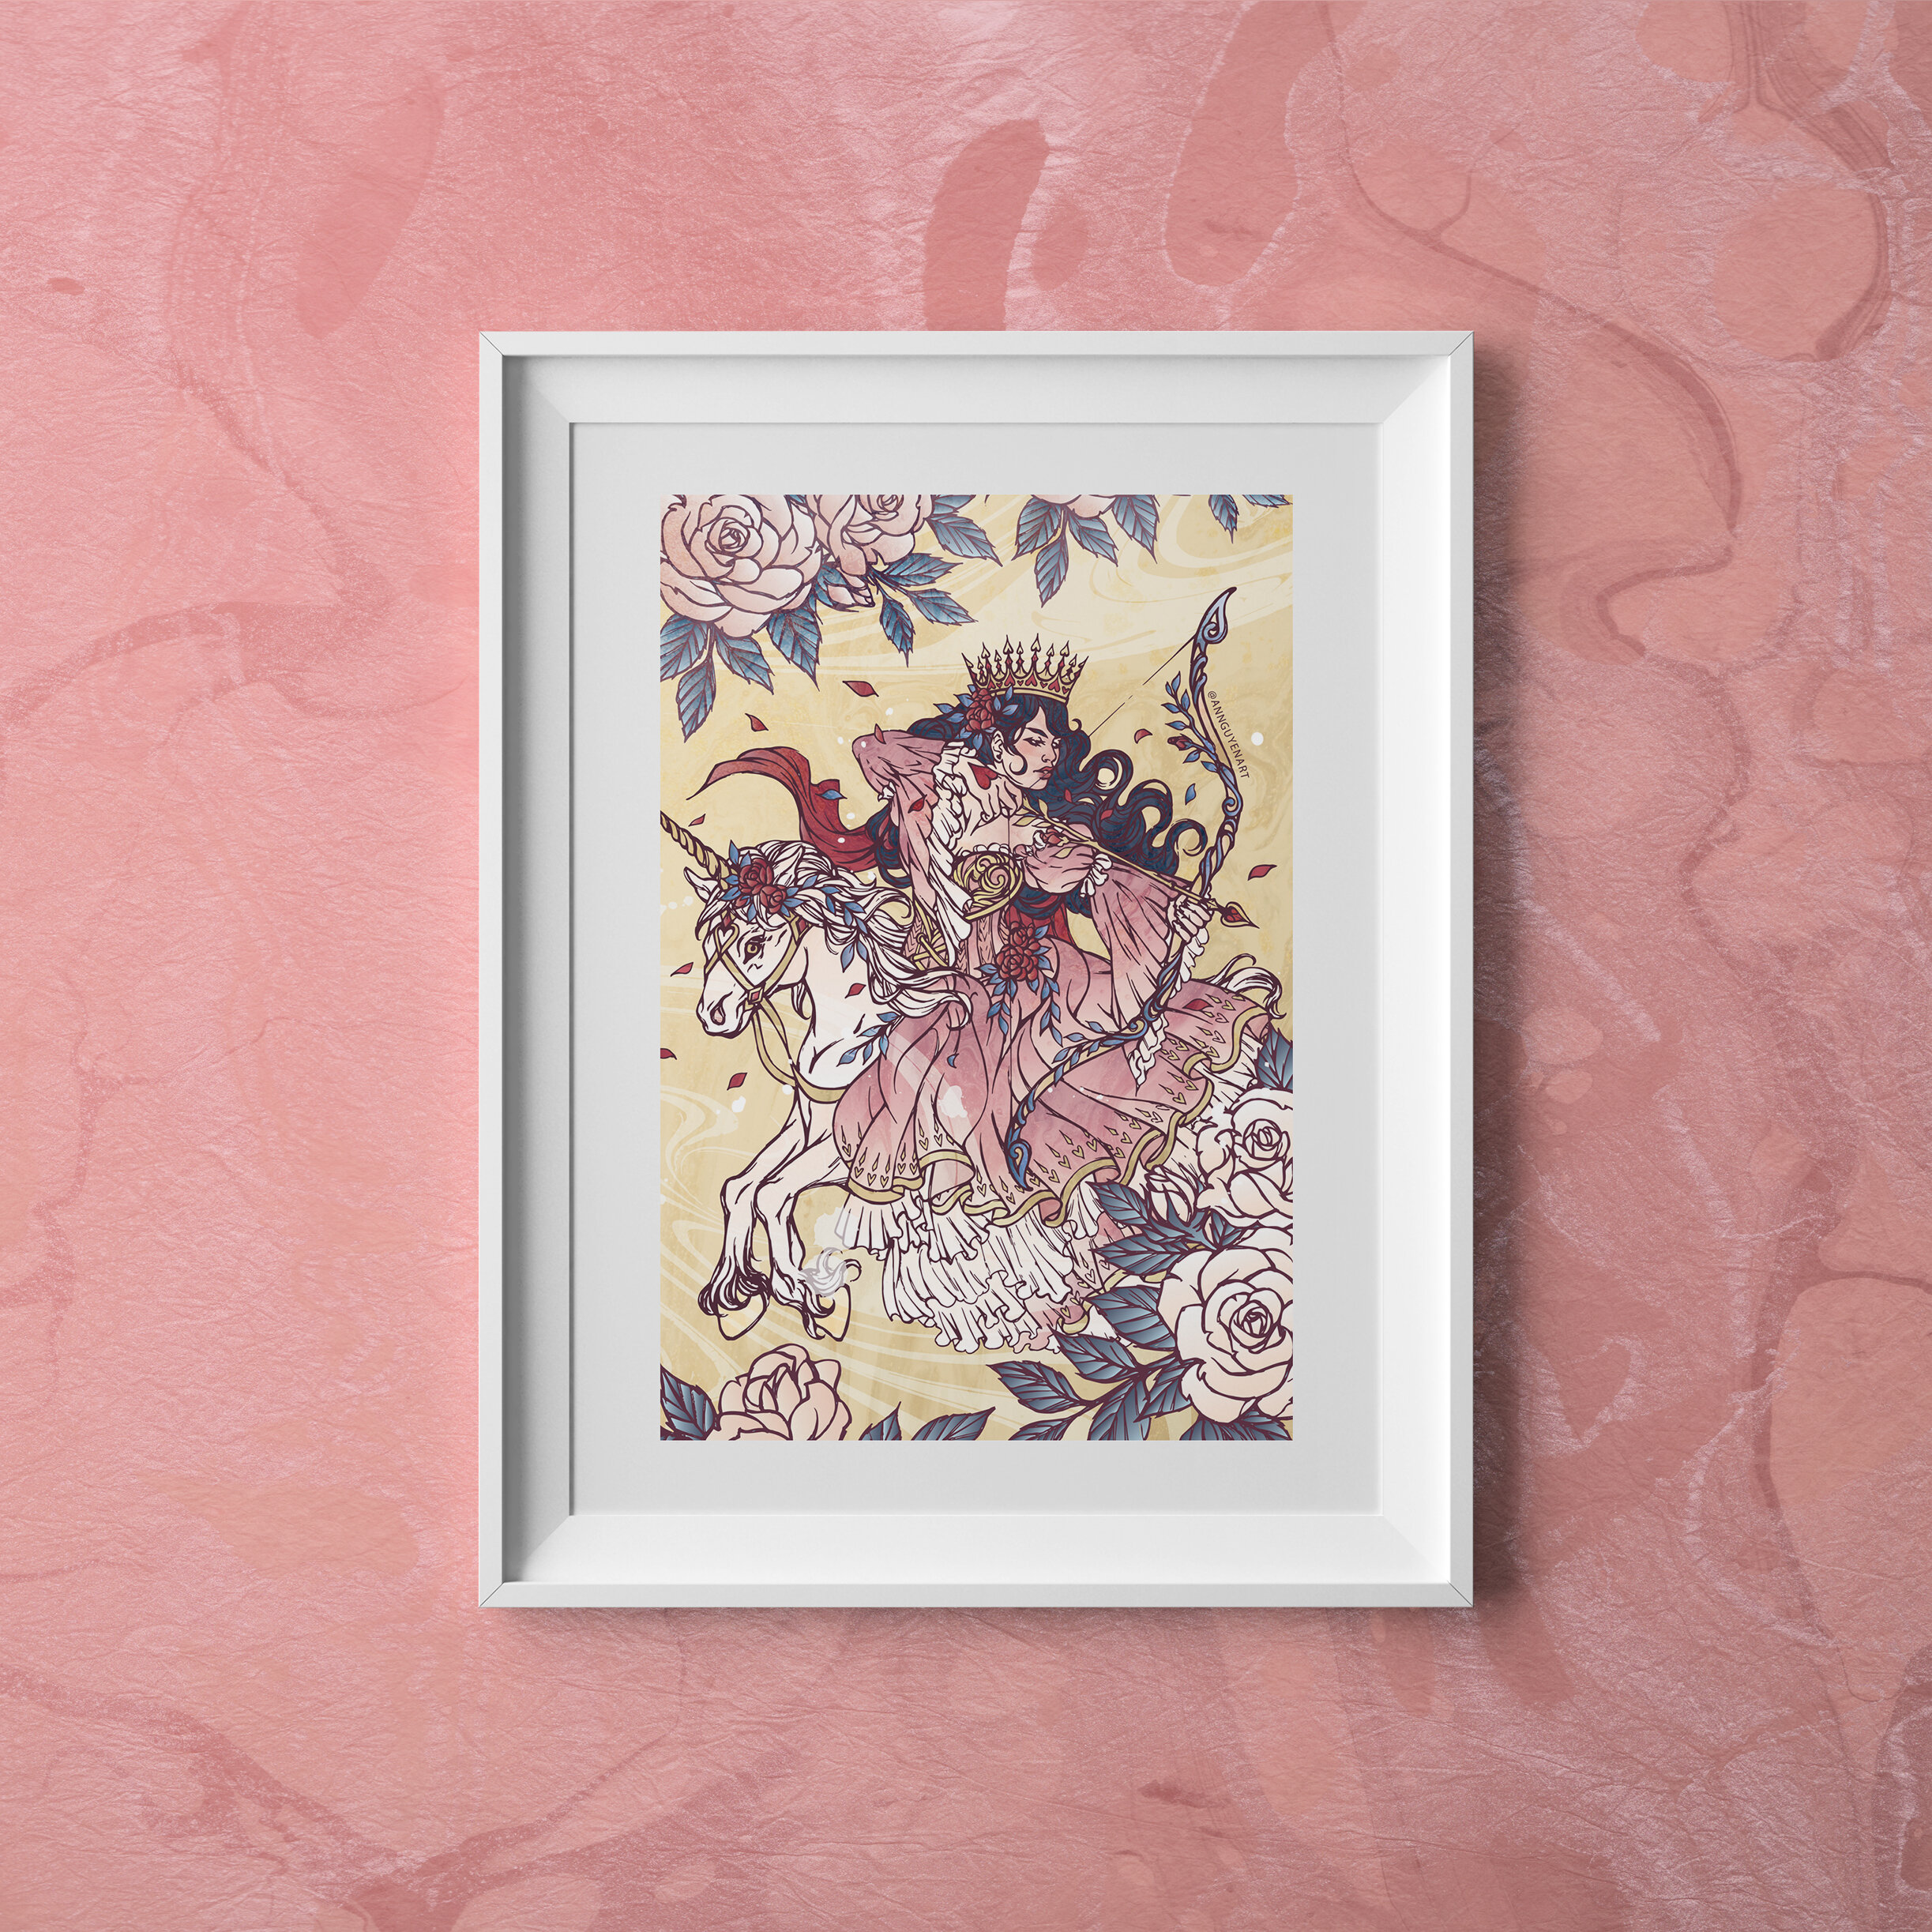 Tarot-Queen-of-Wands-Postcard-Frame-Pink-BG.jpg